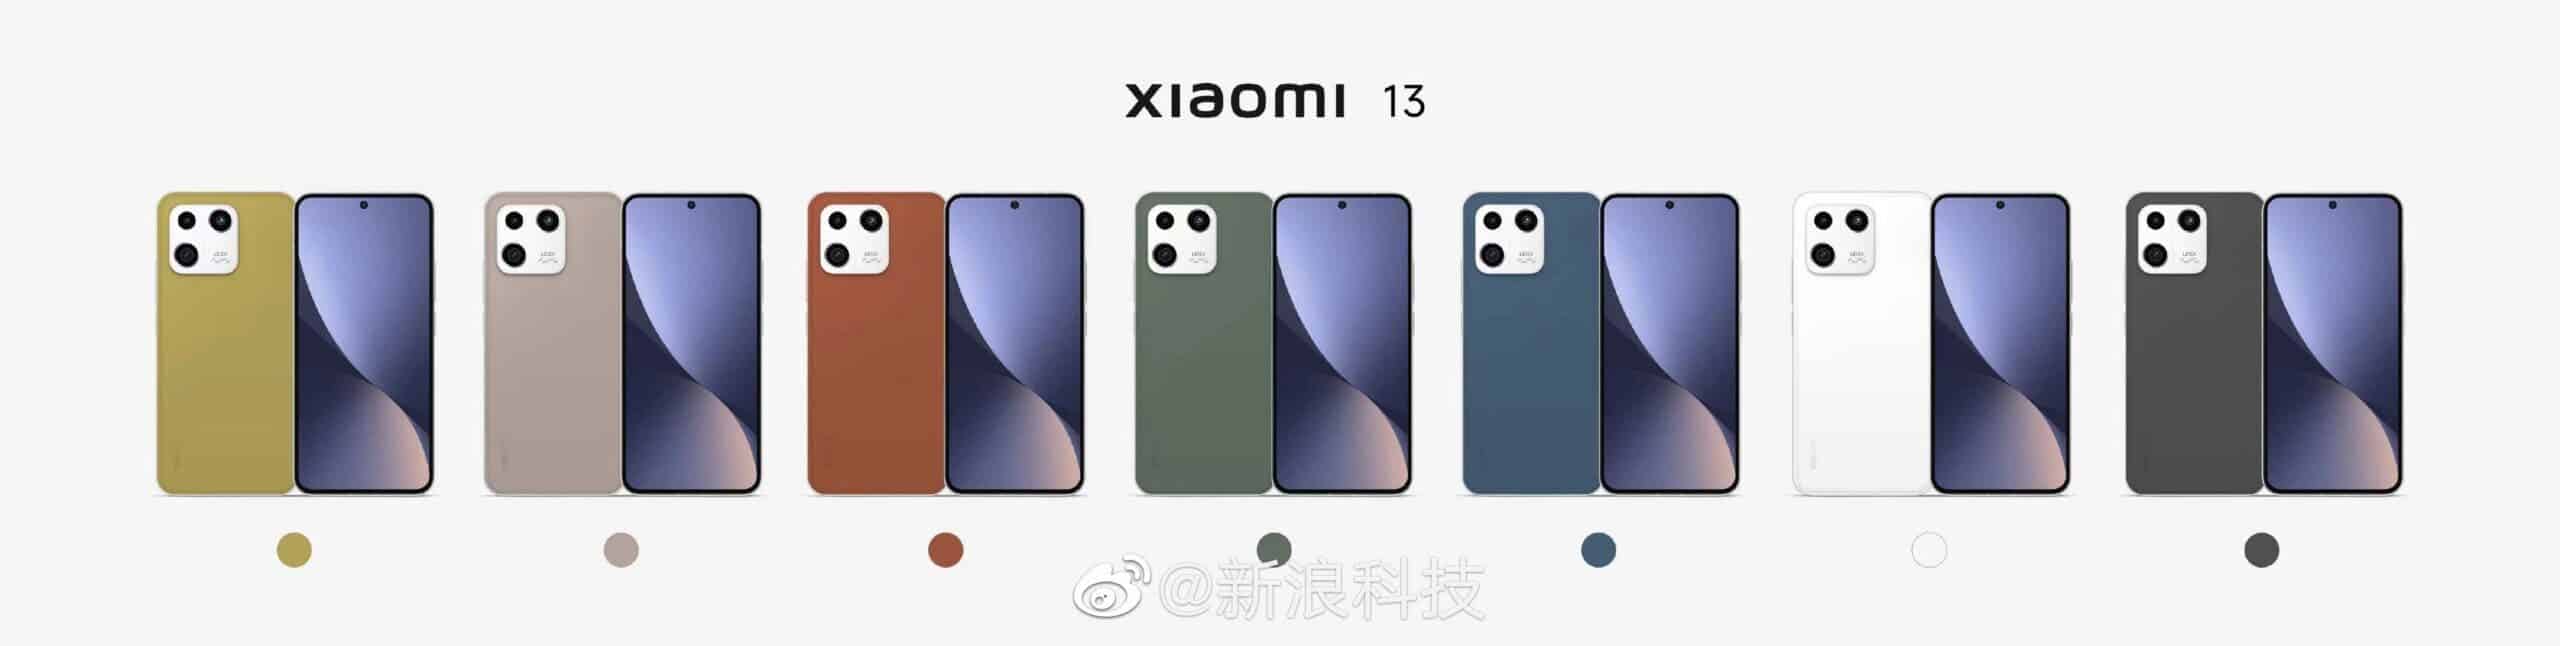 Xiaomi13 colors